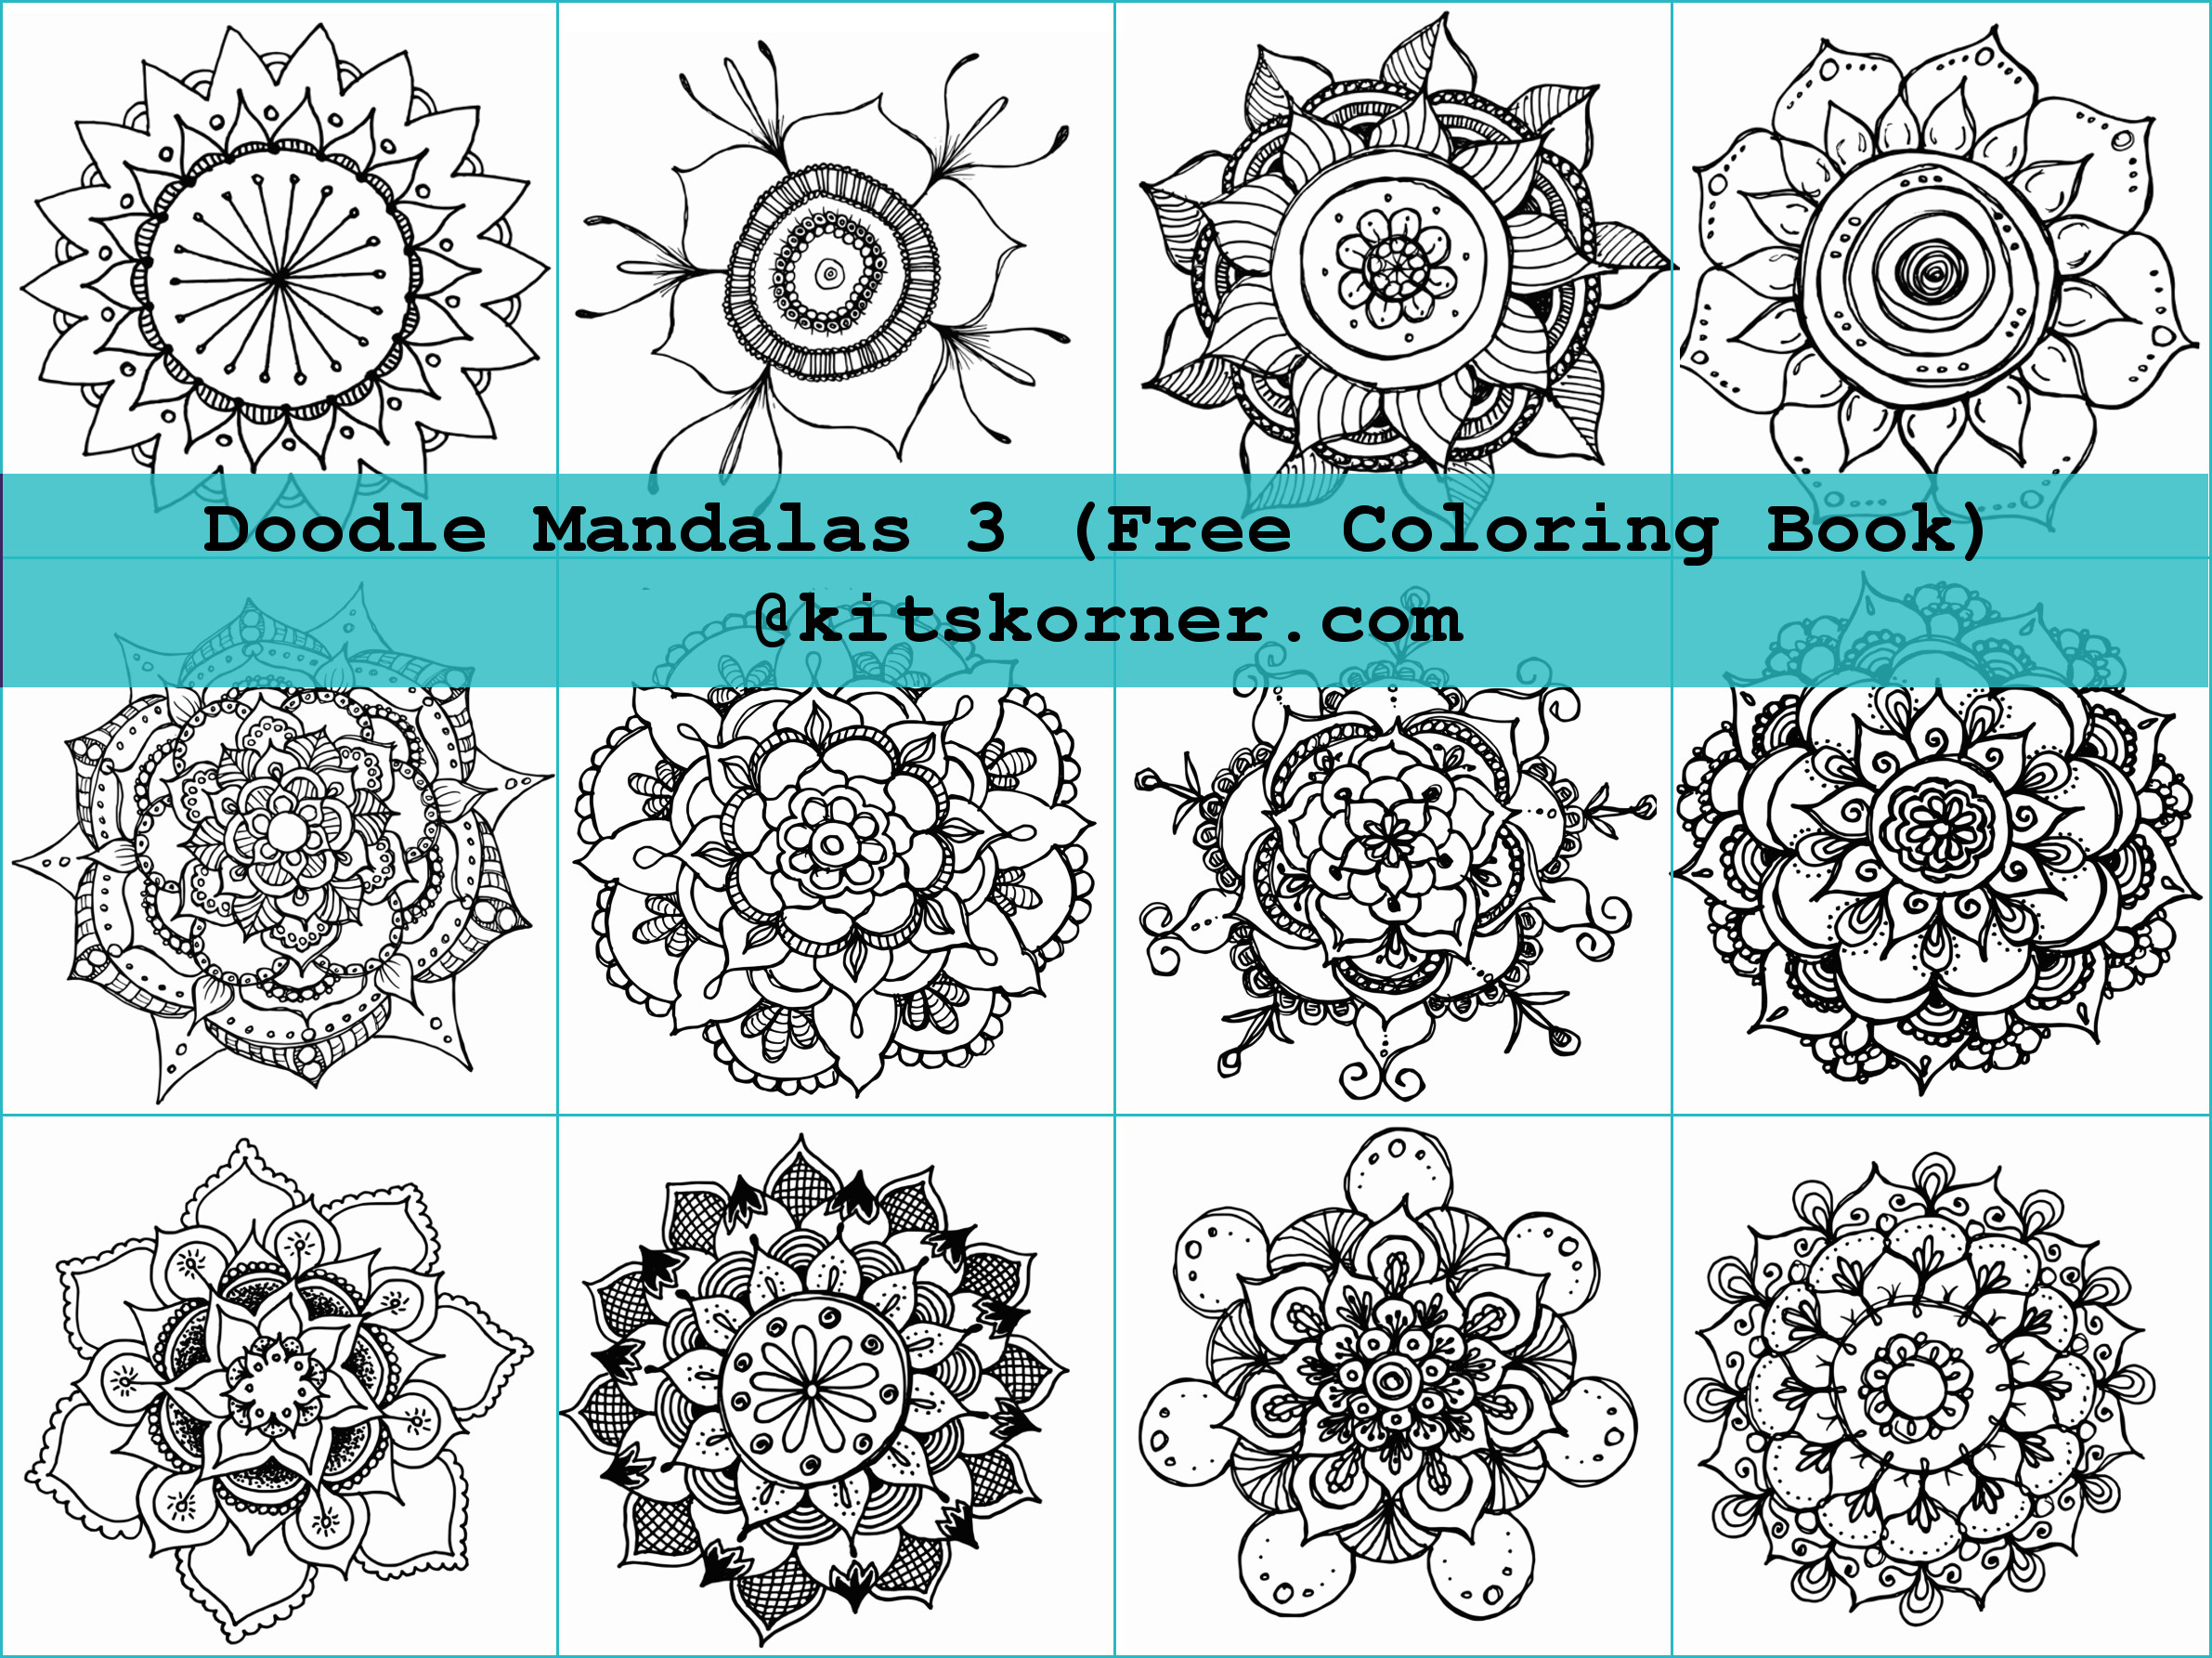 Free Coloring Book – Doodle Mandalas 3